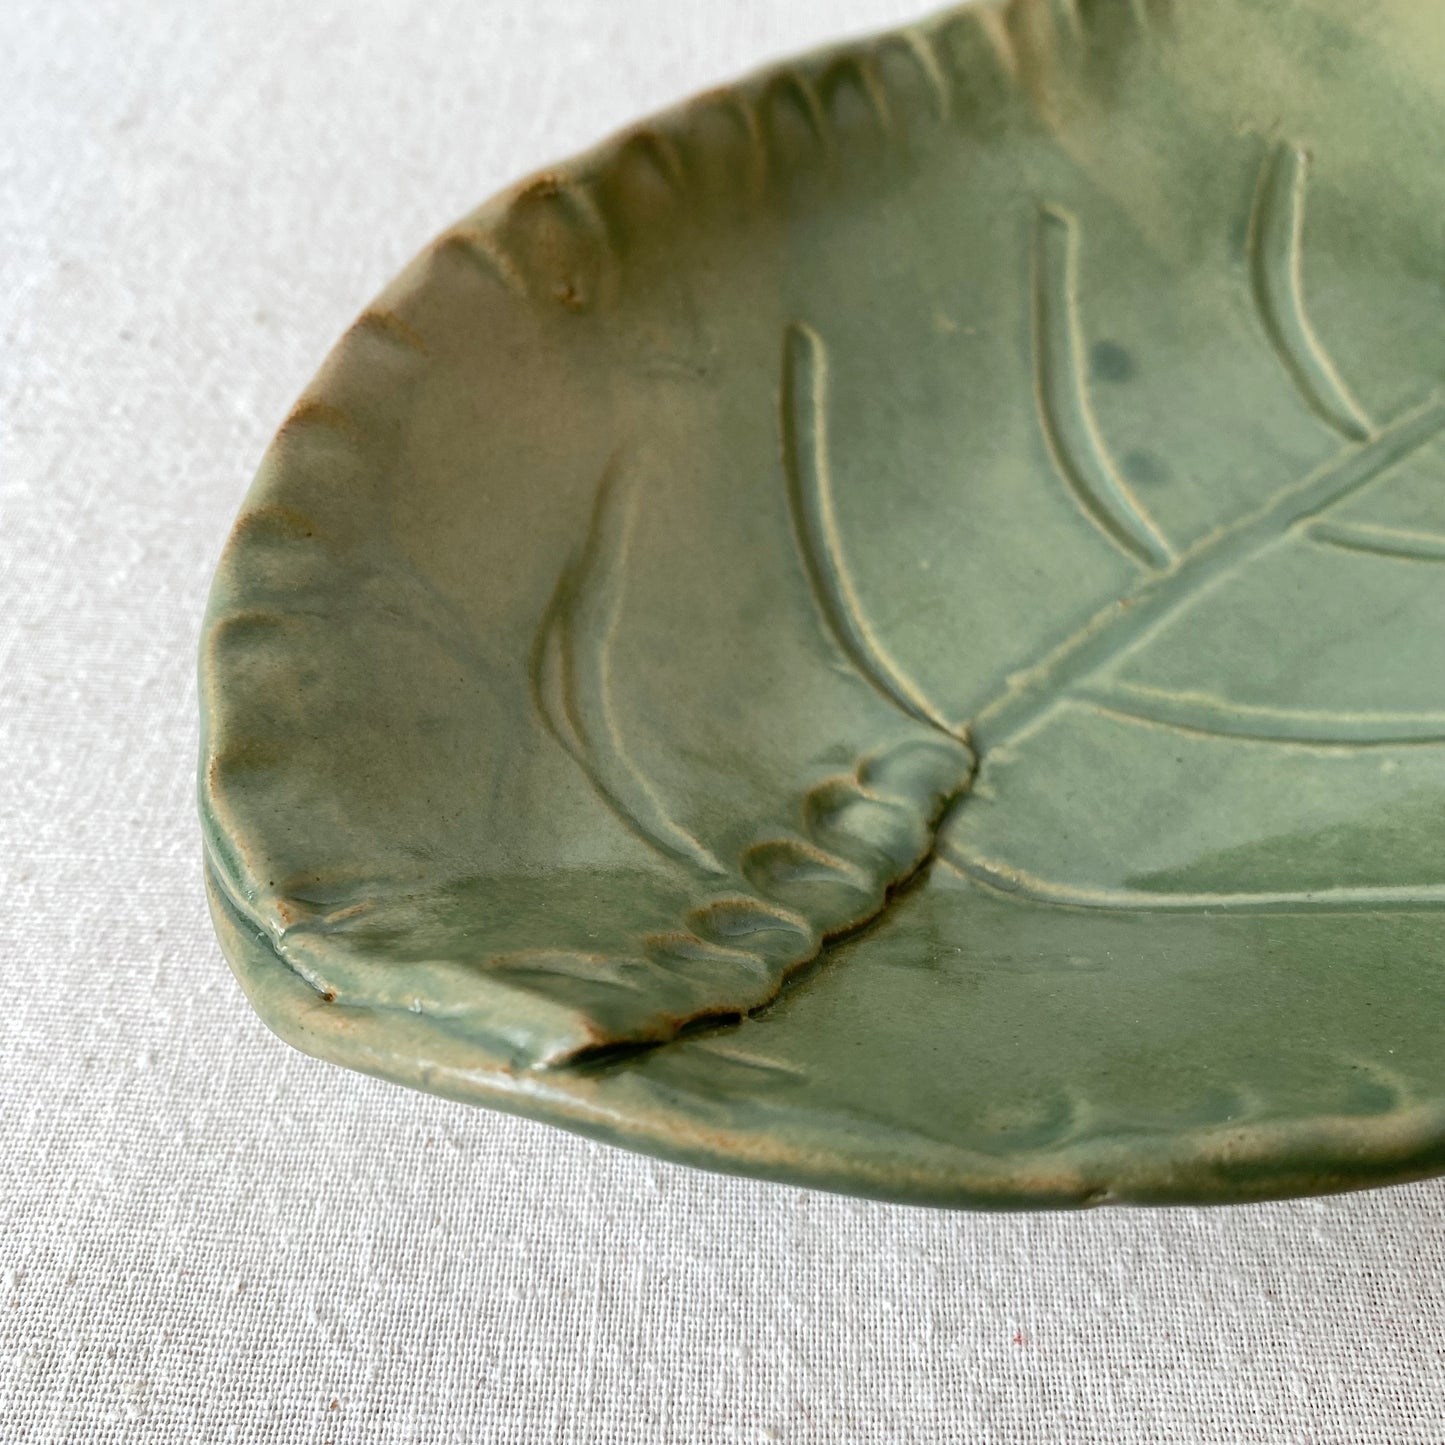 Vintage Stoneware Leaf Bowl